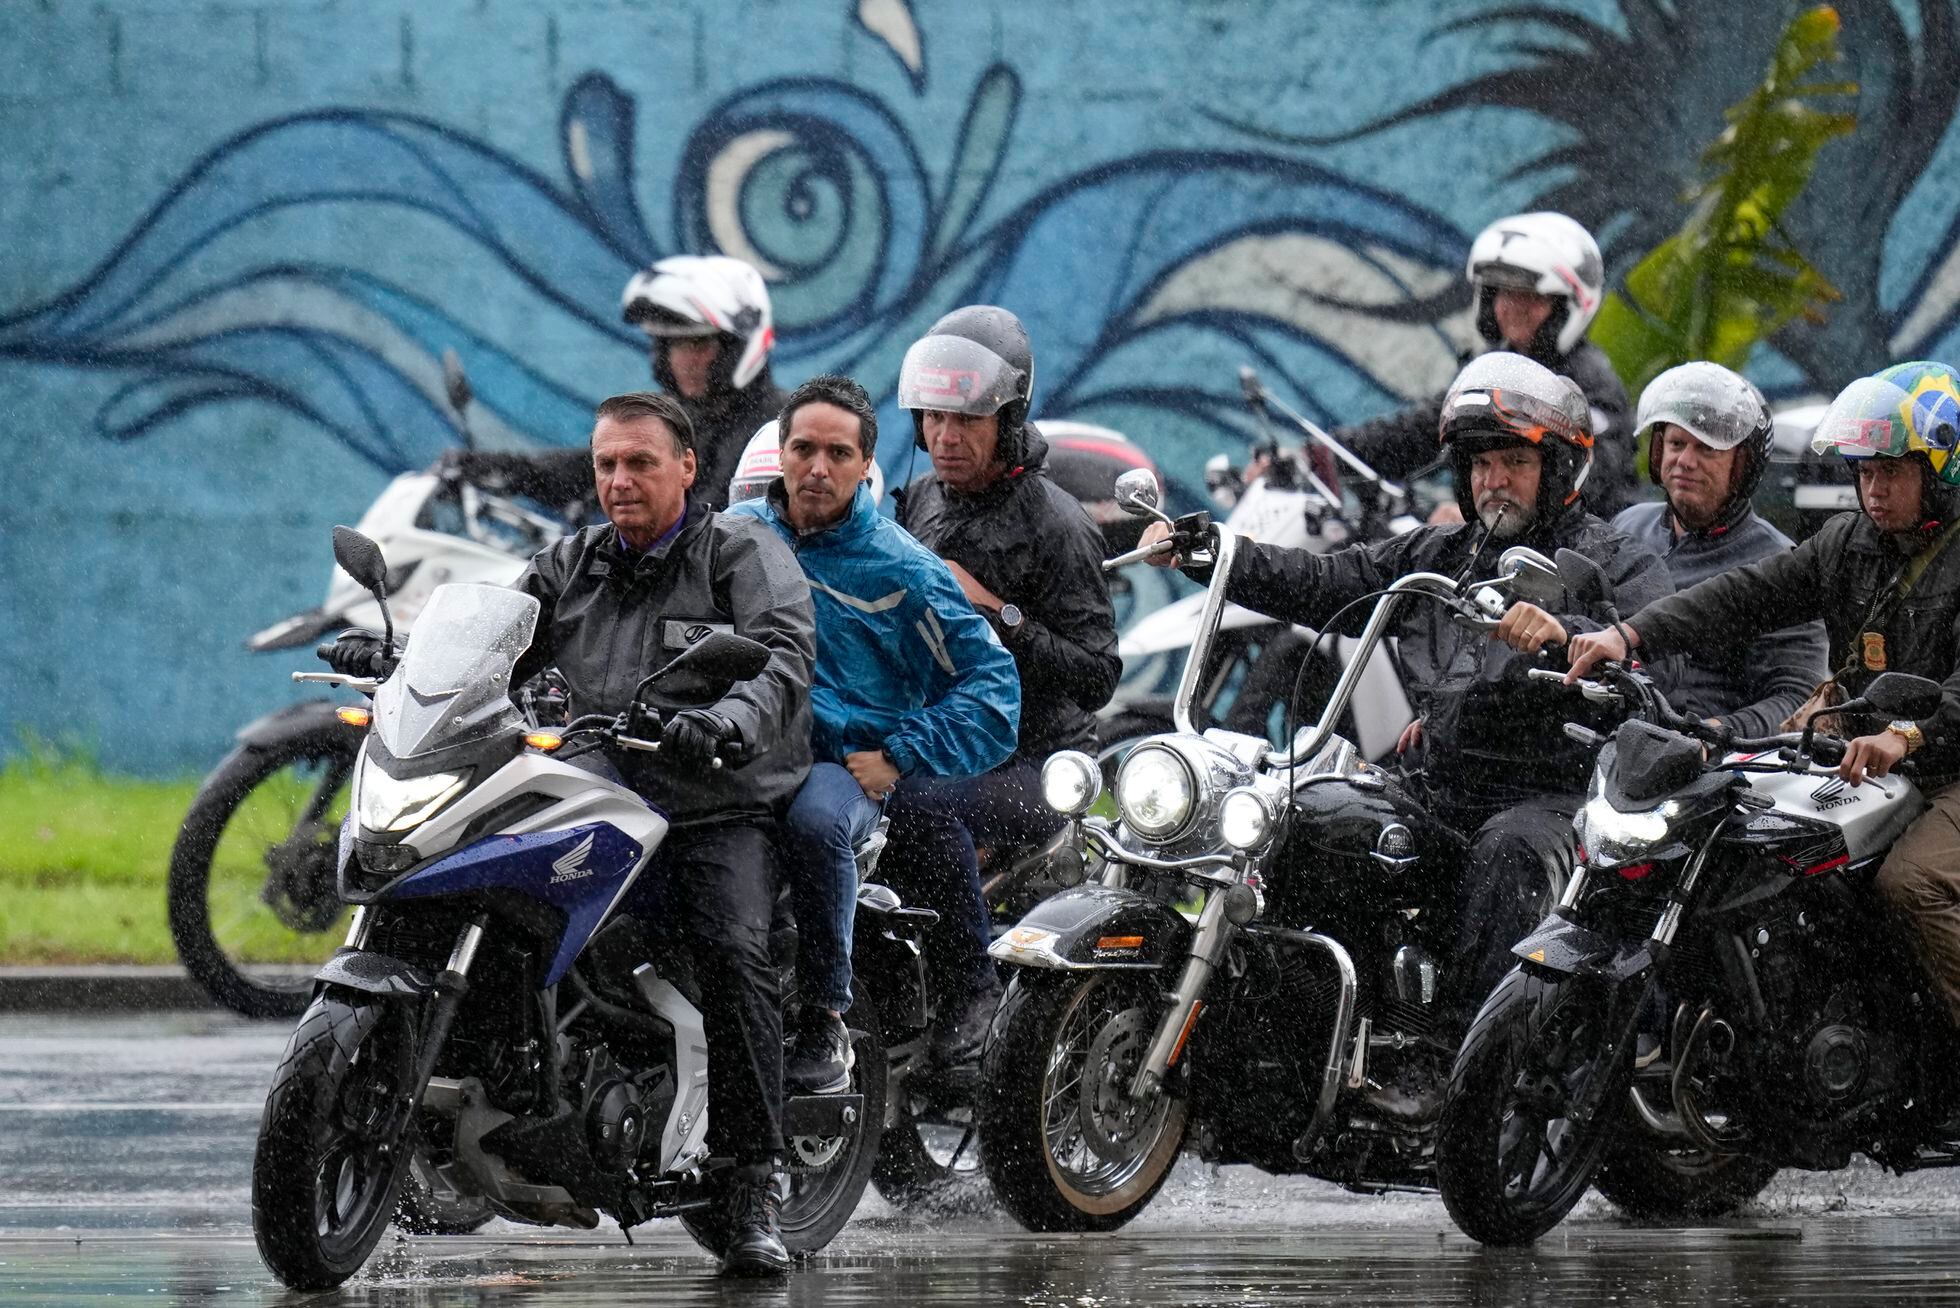 El presidente de Brasil, Jair Bolsonaro, lidera una caravana de motos durante una jornada de campaña electoral en Santos, en el Estado de São Paulo, el 28 de septiembre de 2022.